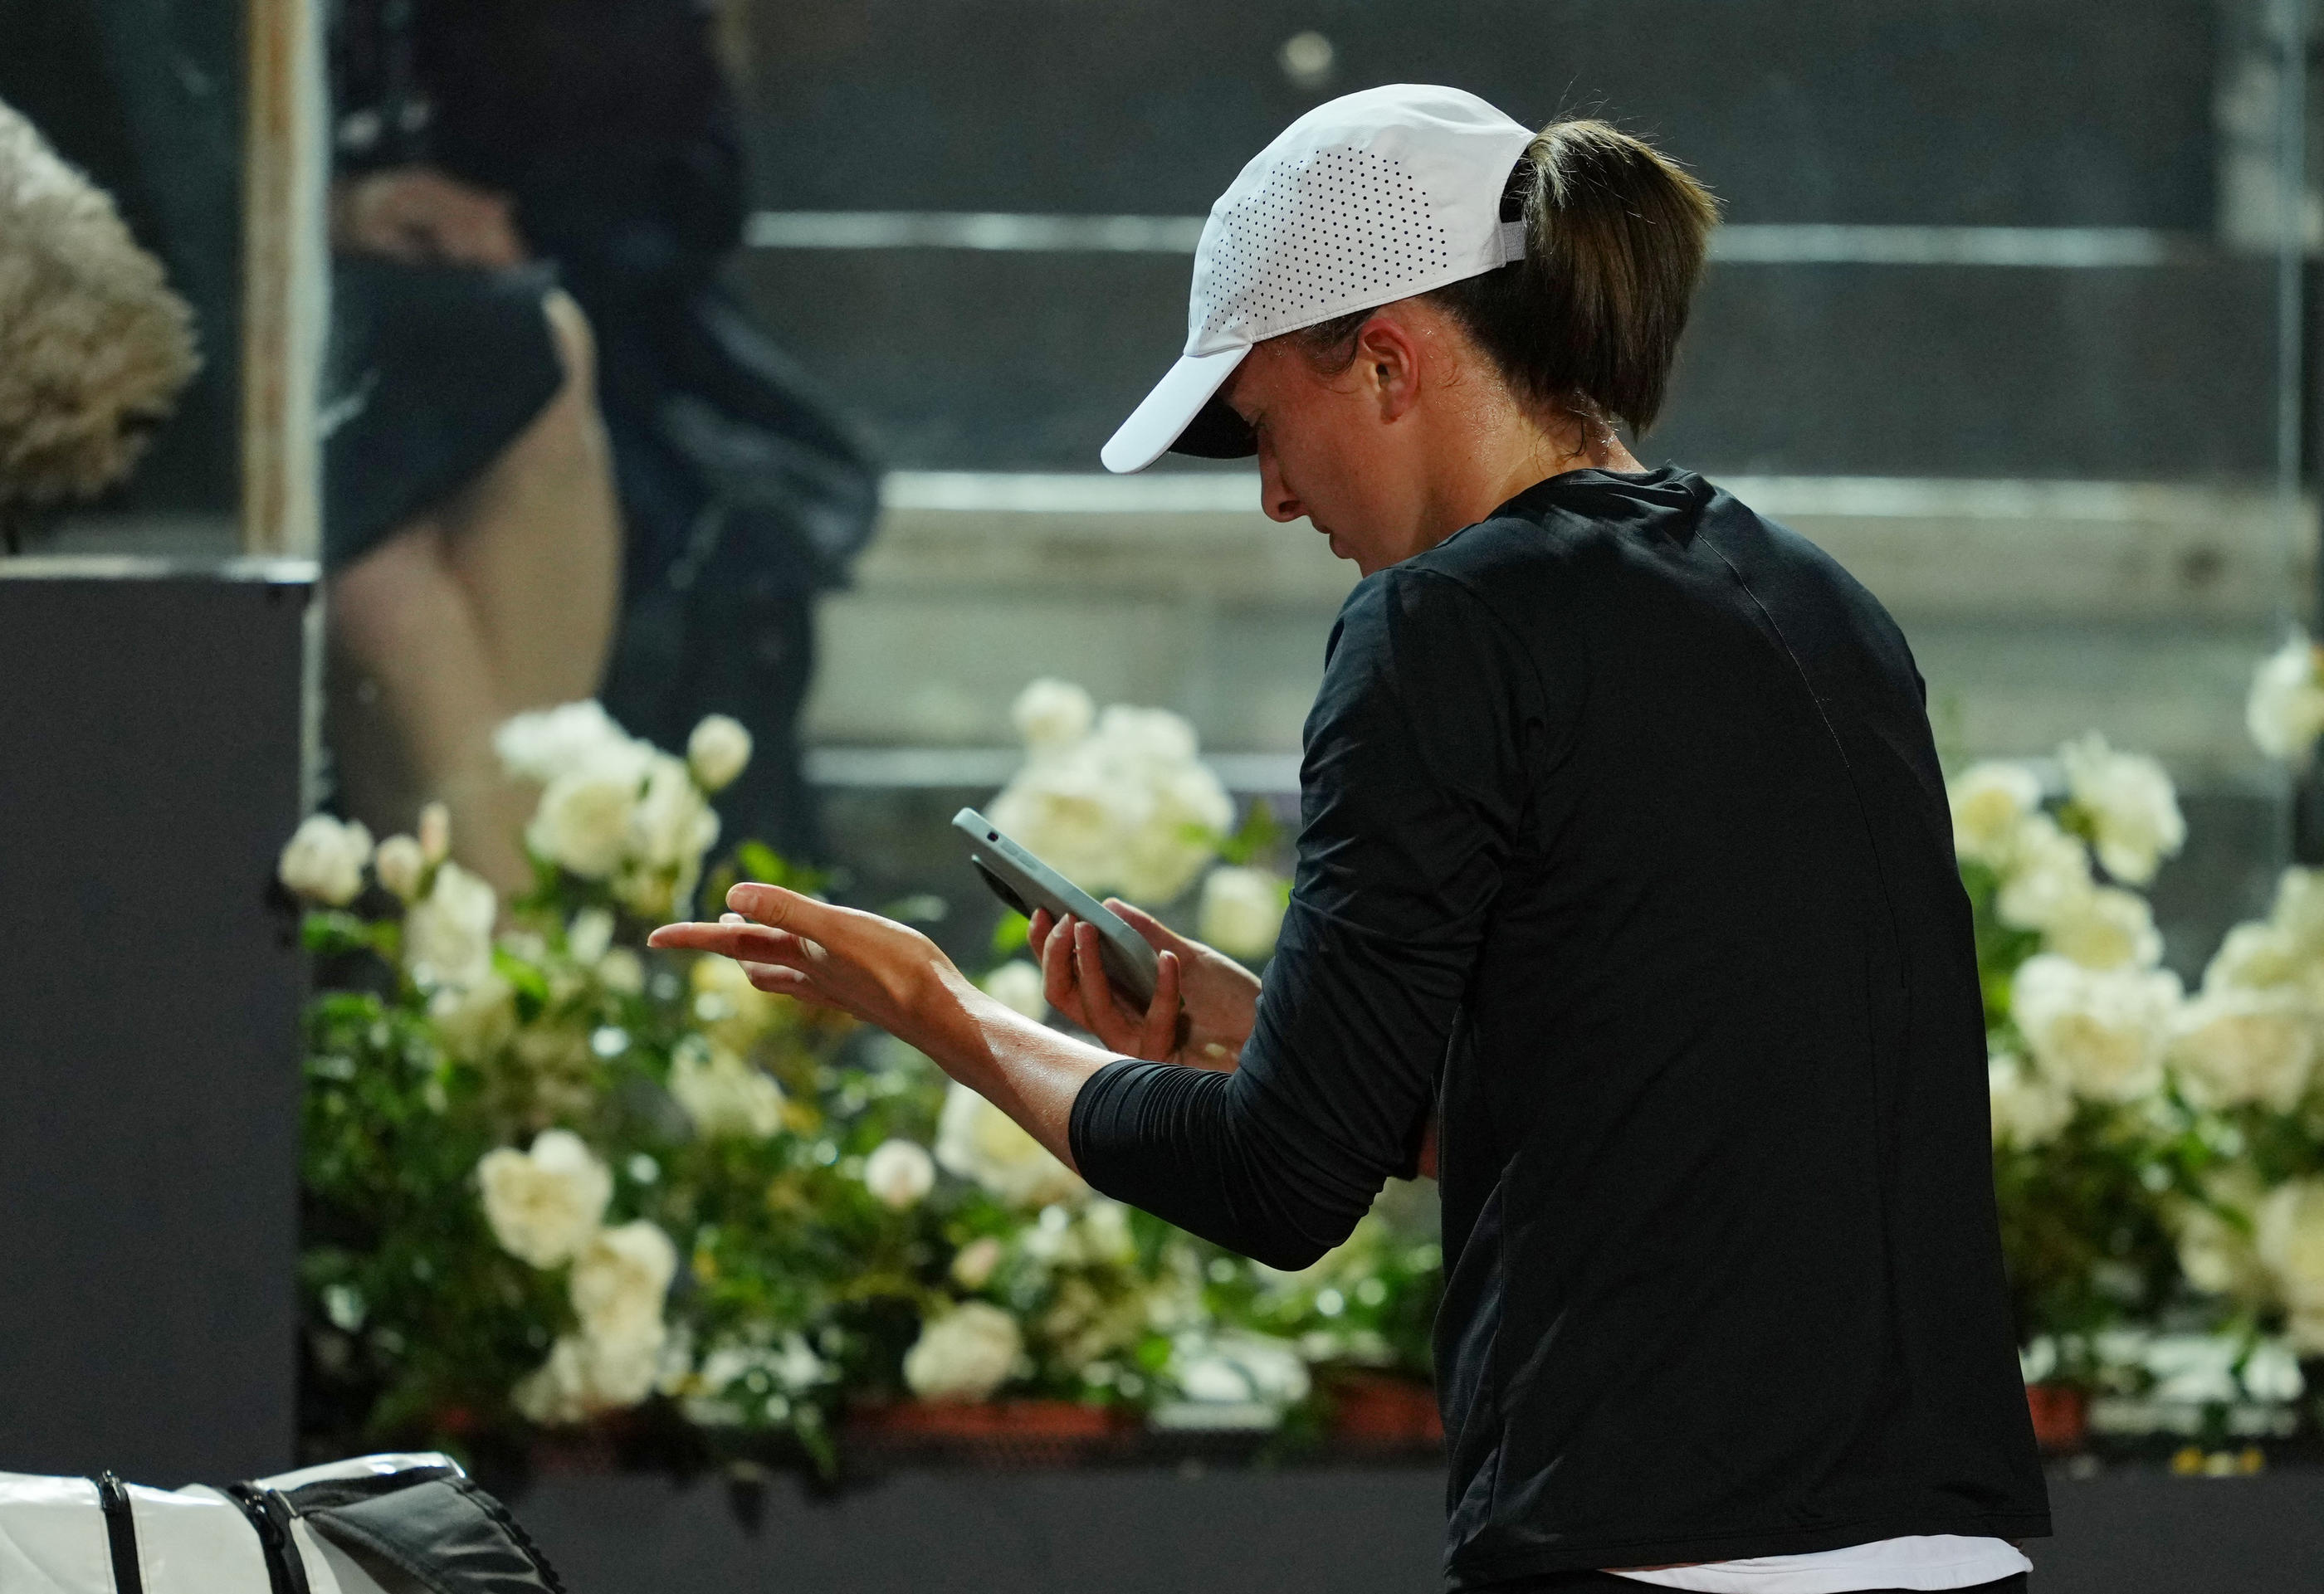 Les joueurs et joueuses de tennis sont particulièrement touchées par le cyberharcèlement, notamment du fait du grand nombre de paris en ligne placés sur les matchs. (Illustration) Reuters/Aleksandra Szmigiel